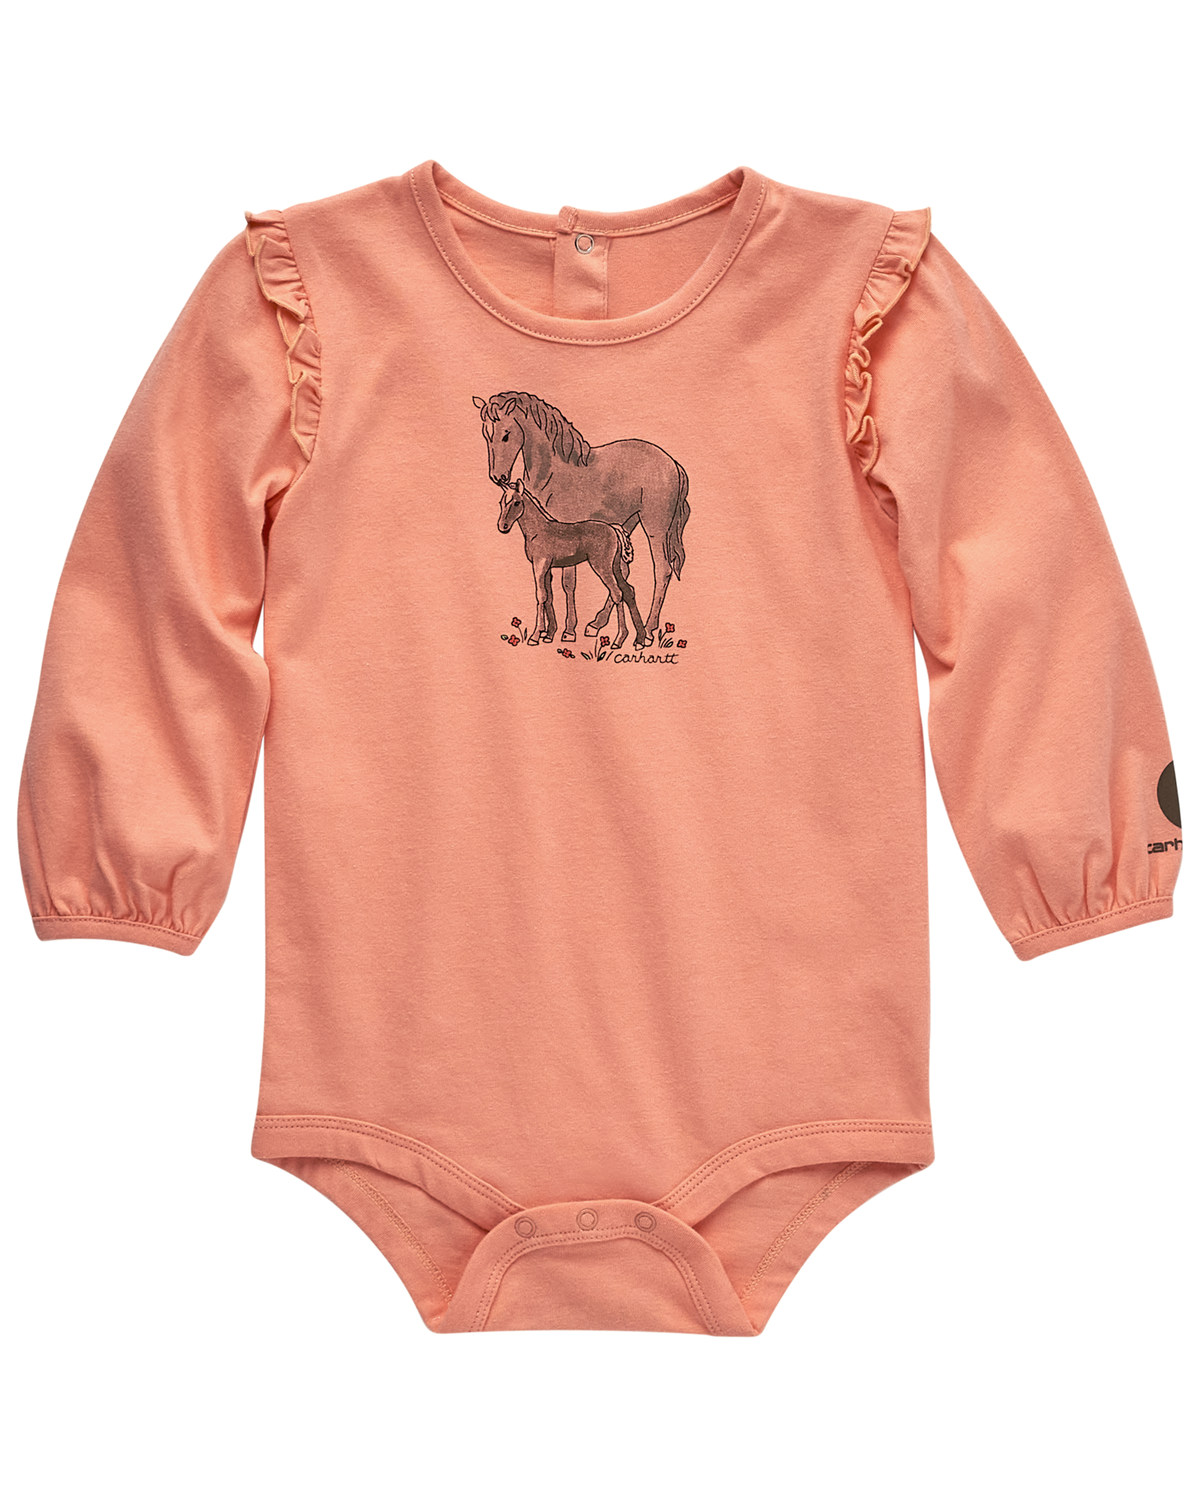 Carhartt Infant Girls' Horses Long Sleeve Onesie